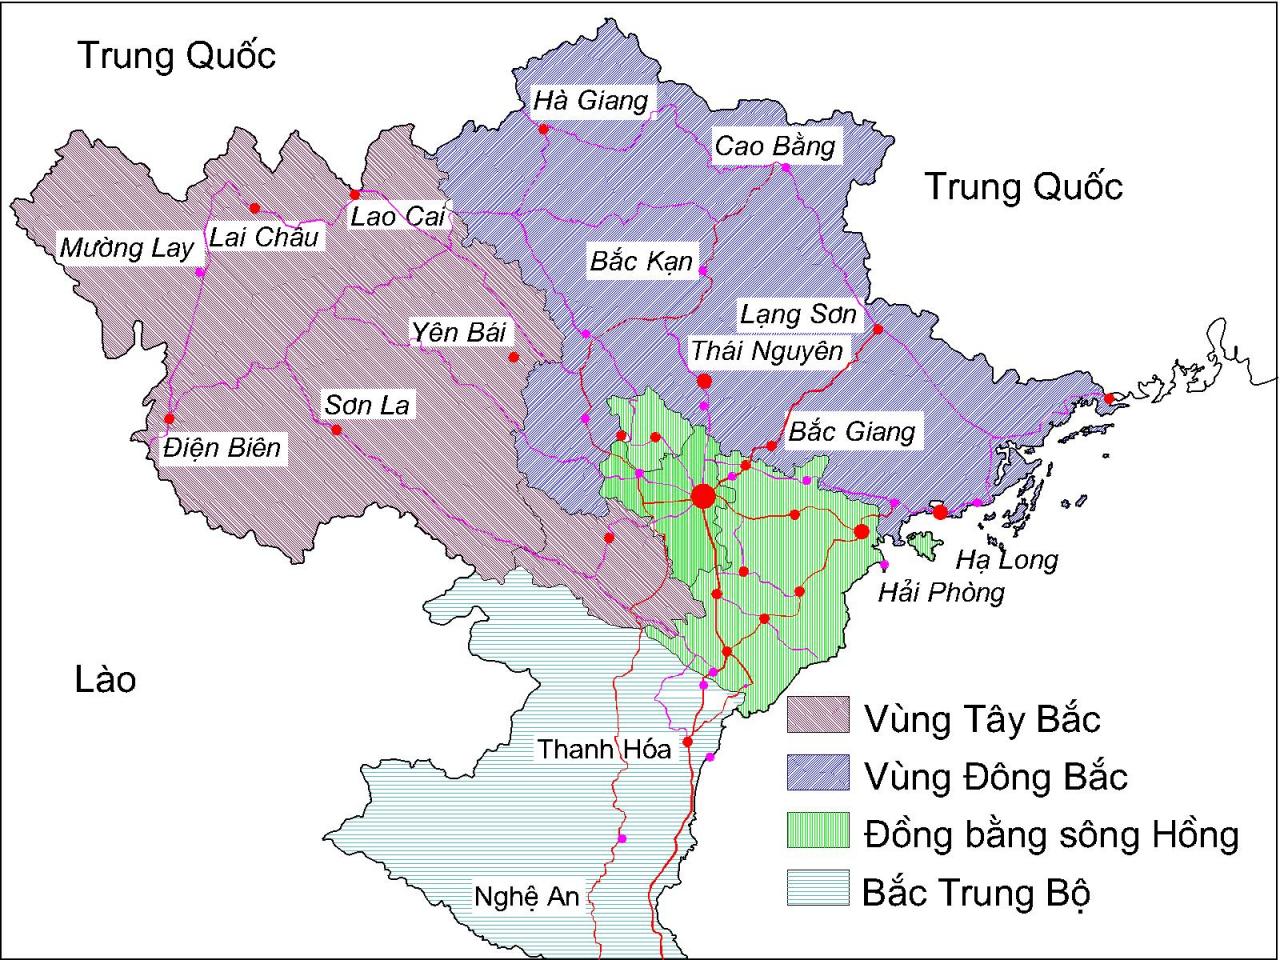 Đồng bằng sông Hồng – Wikipedia tiếng Việt